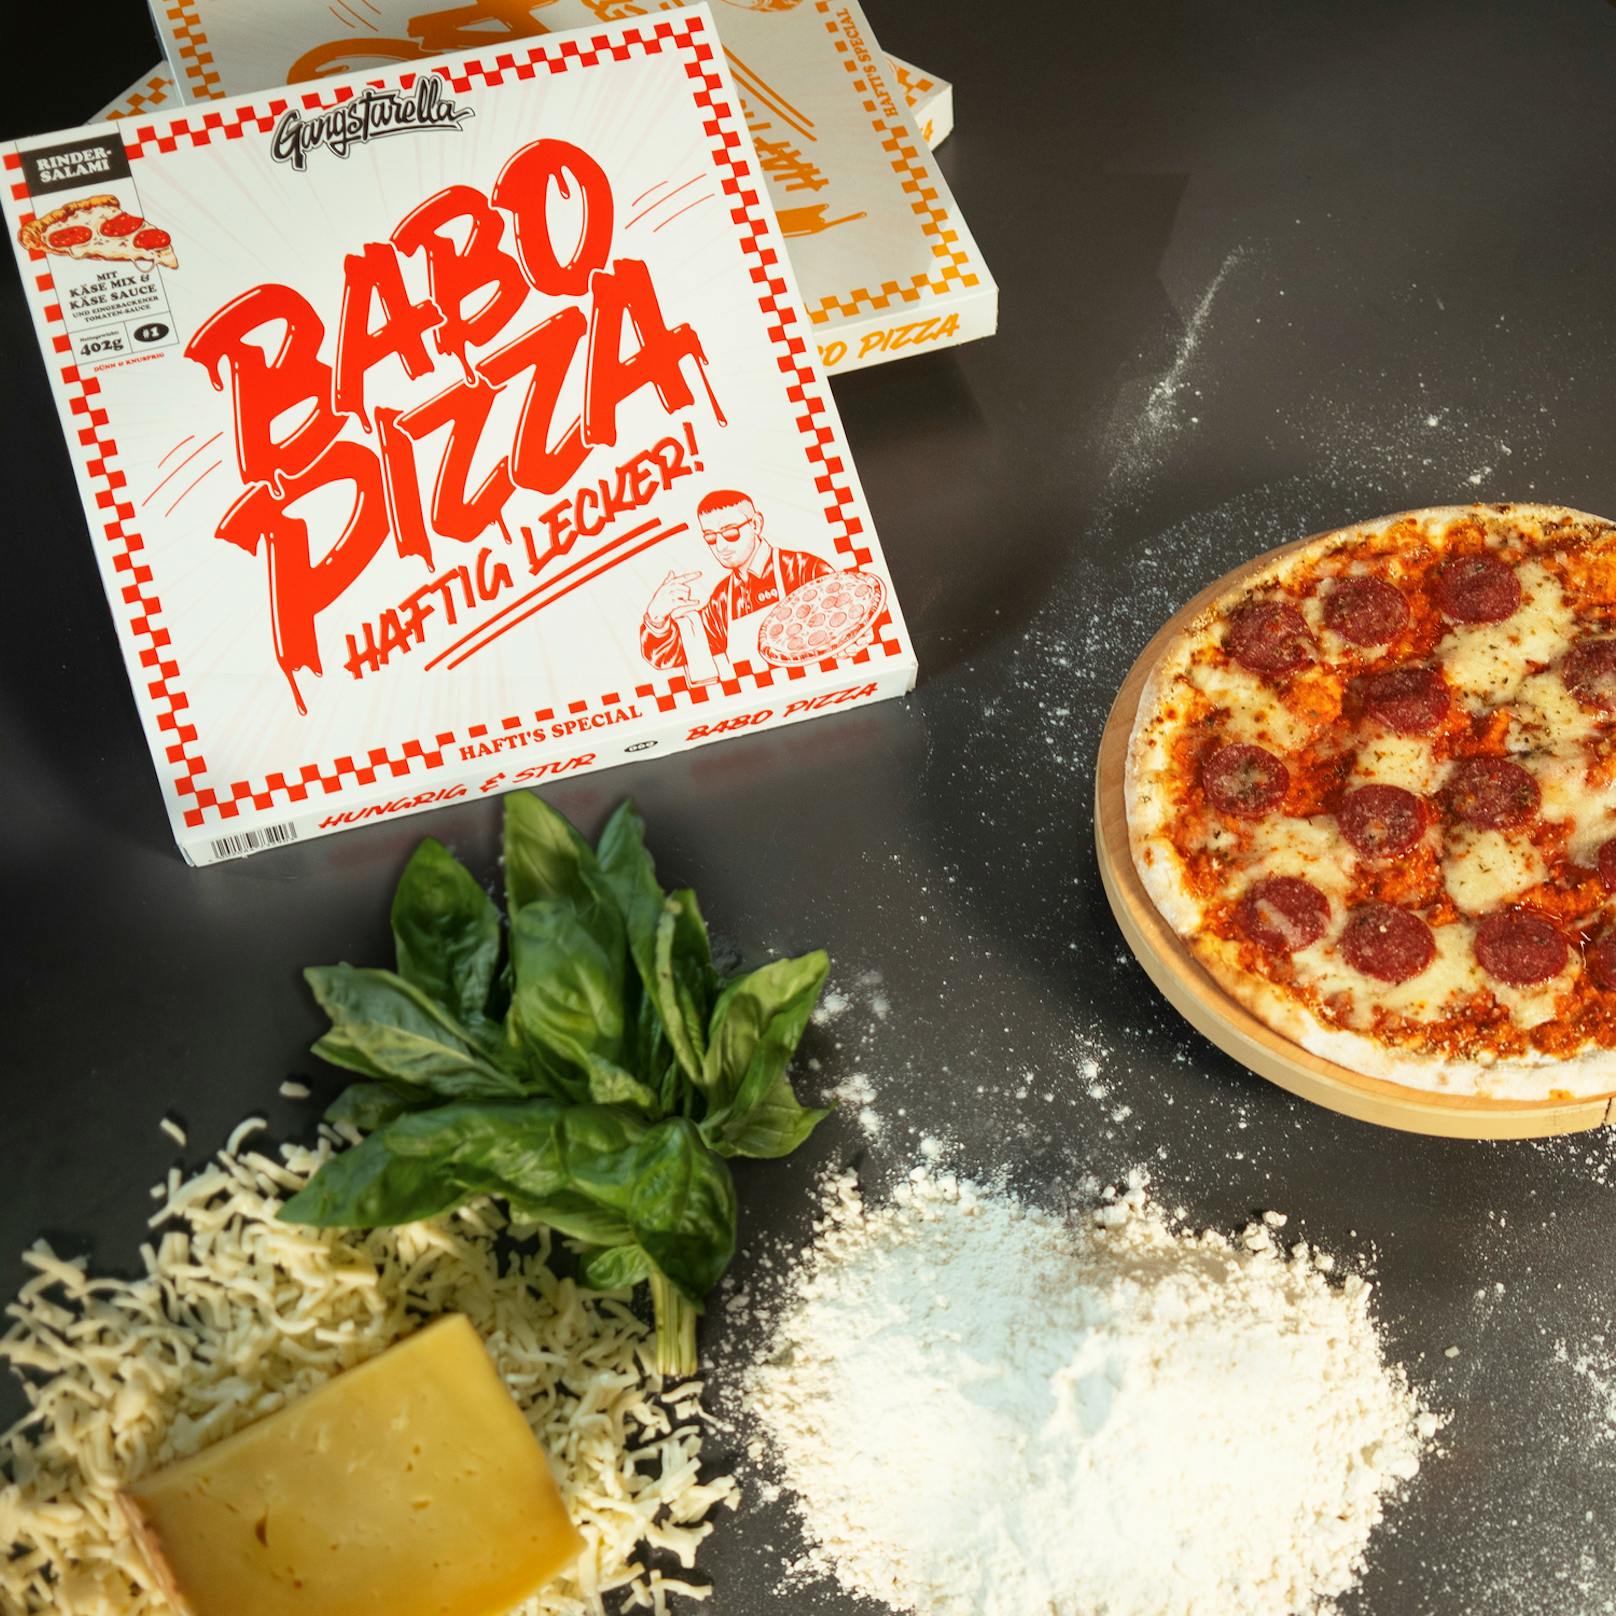 Nach Capital Bra erobert nun ein weiterer Deutsch-Rapper die kulinarische Szene. "Haftbefehl" bringt die "Babo Pizza" auf den Markt.